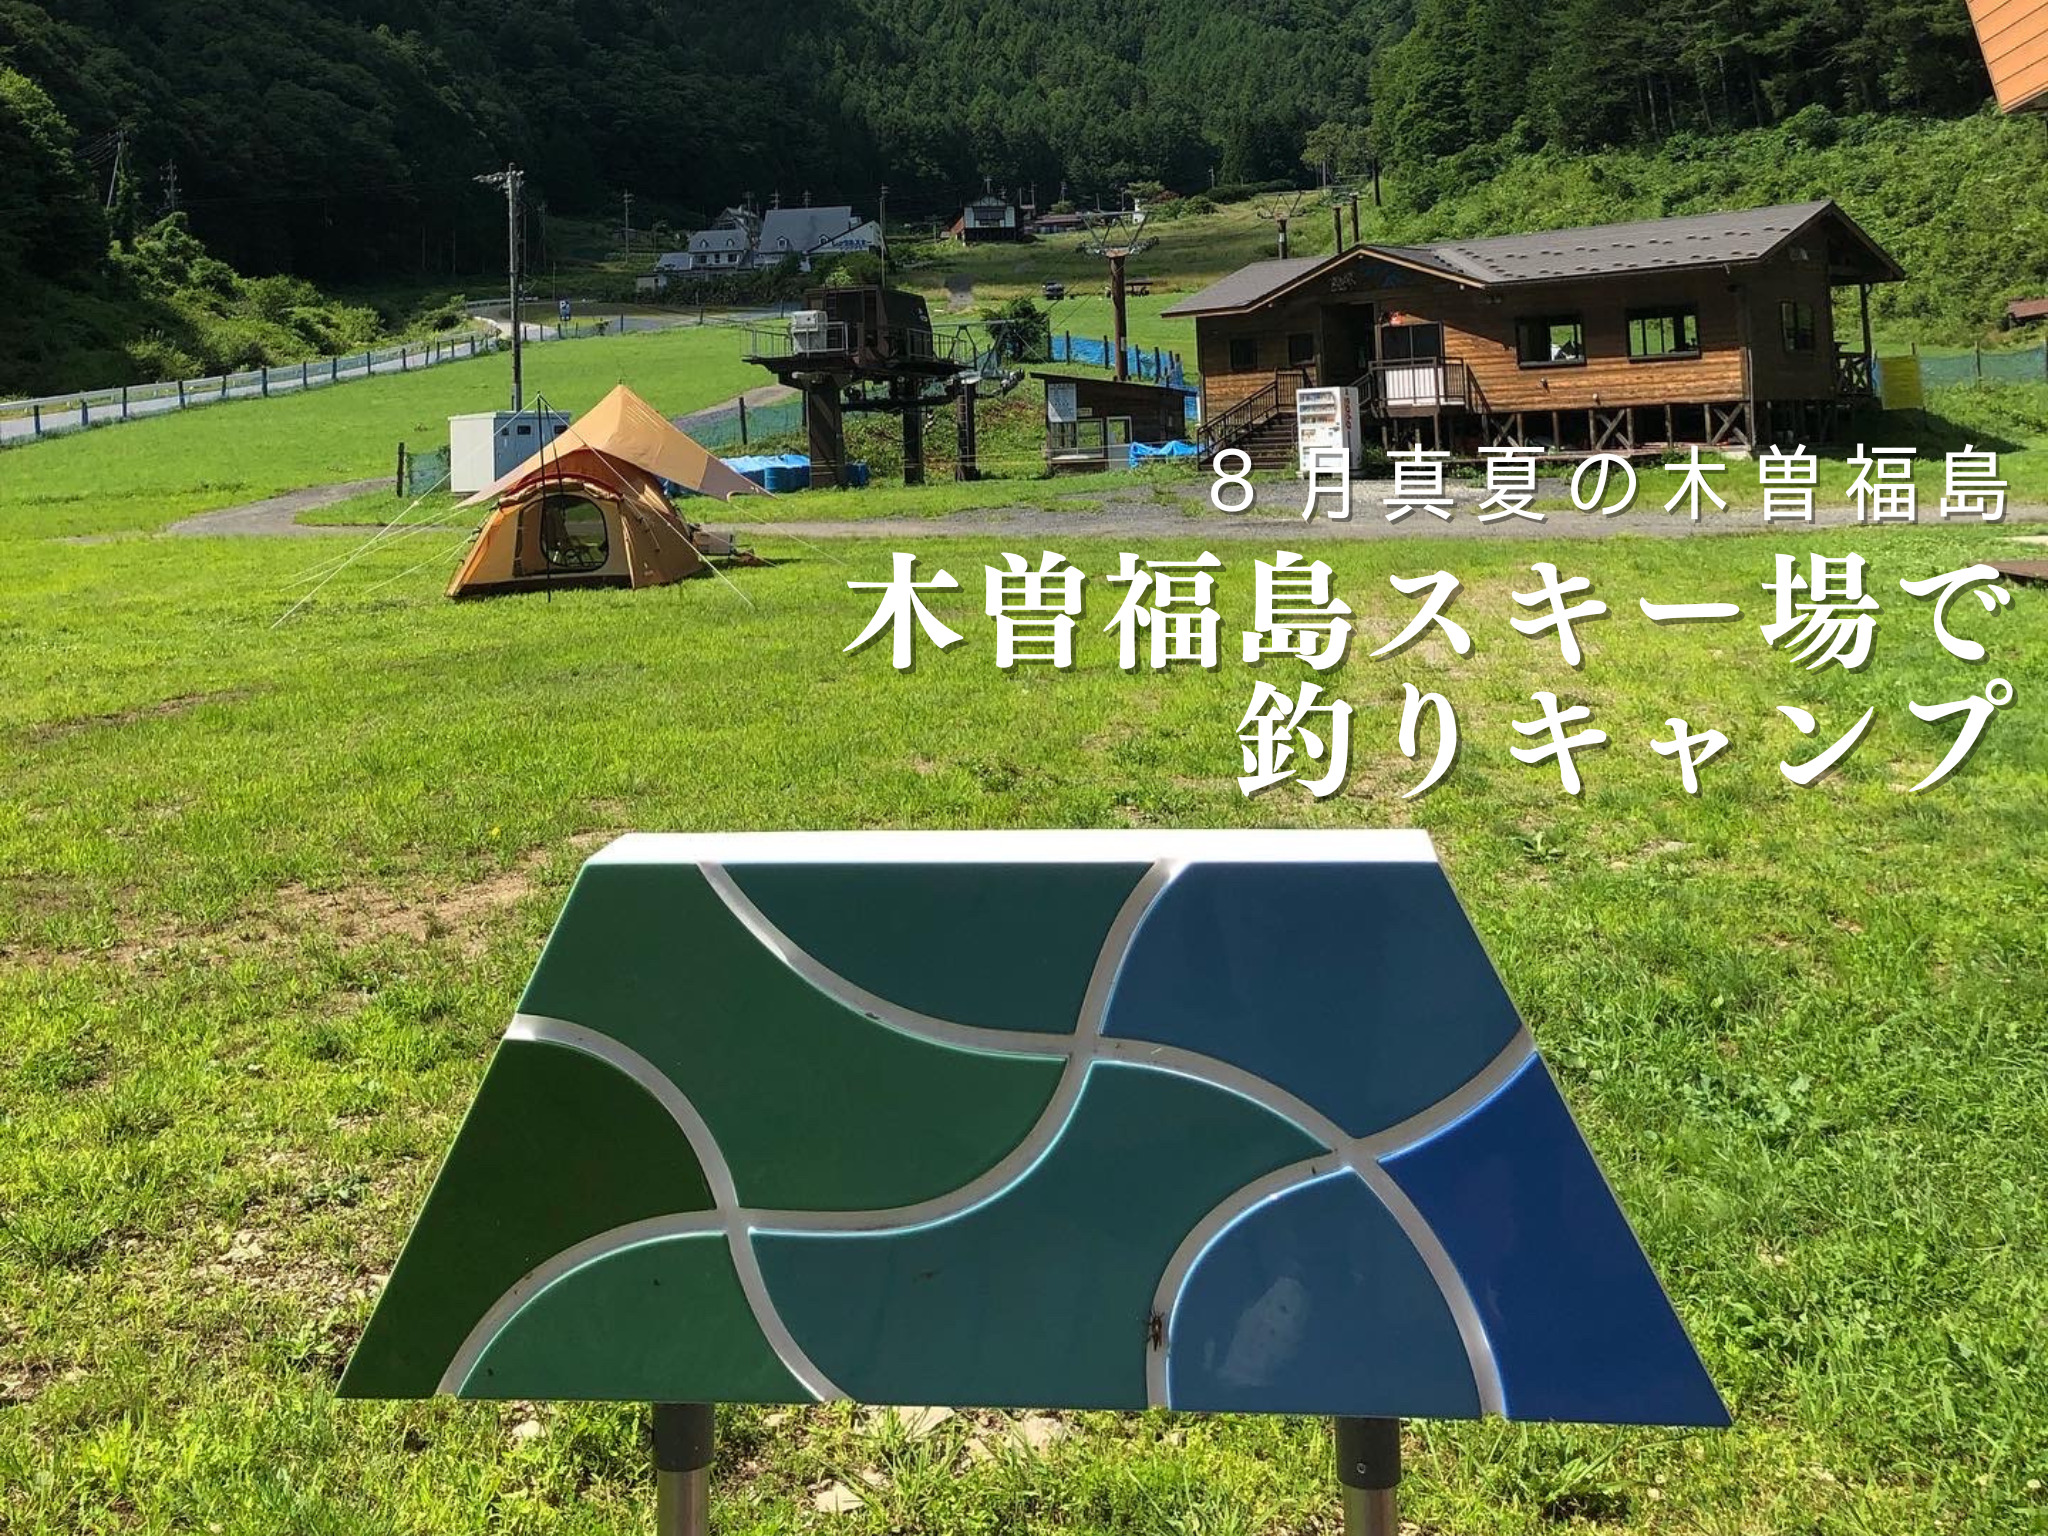 【8月初旬】真夏の木曽福島スキー場で釣りキャンプ!?